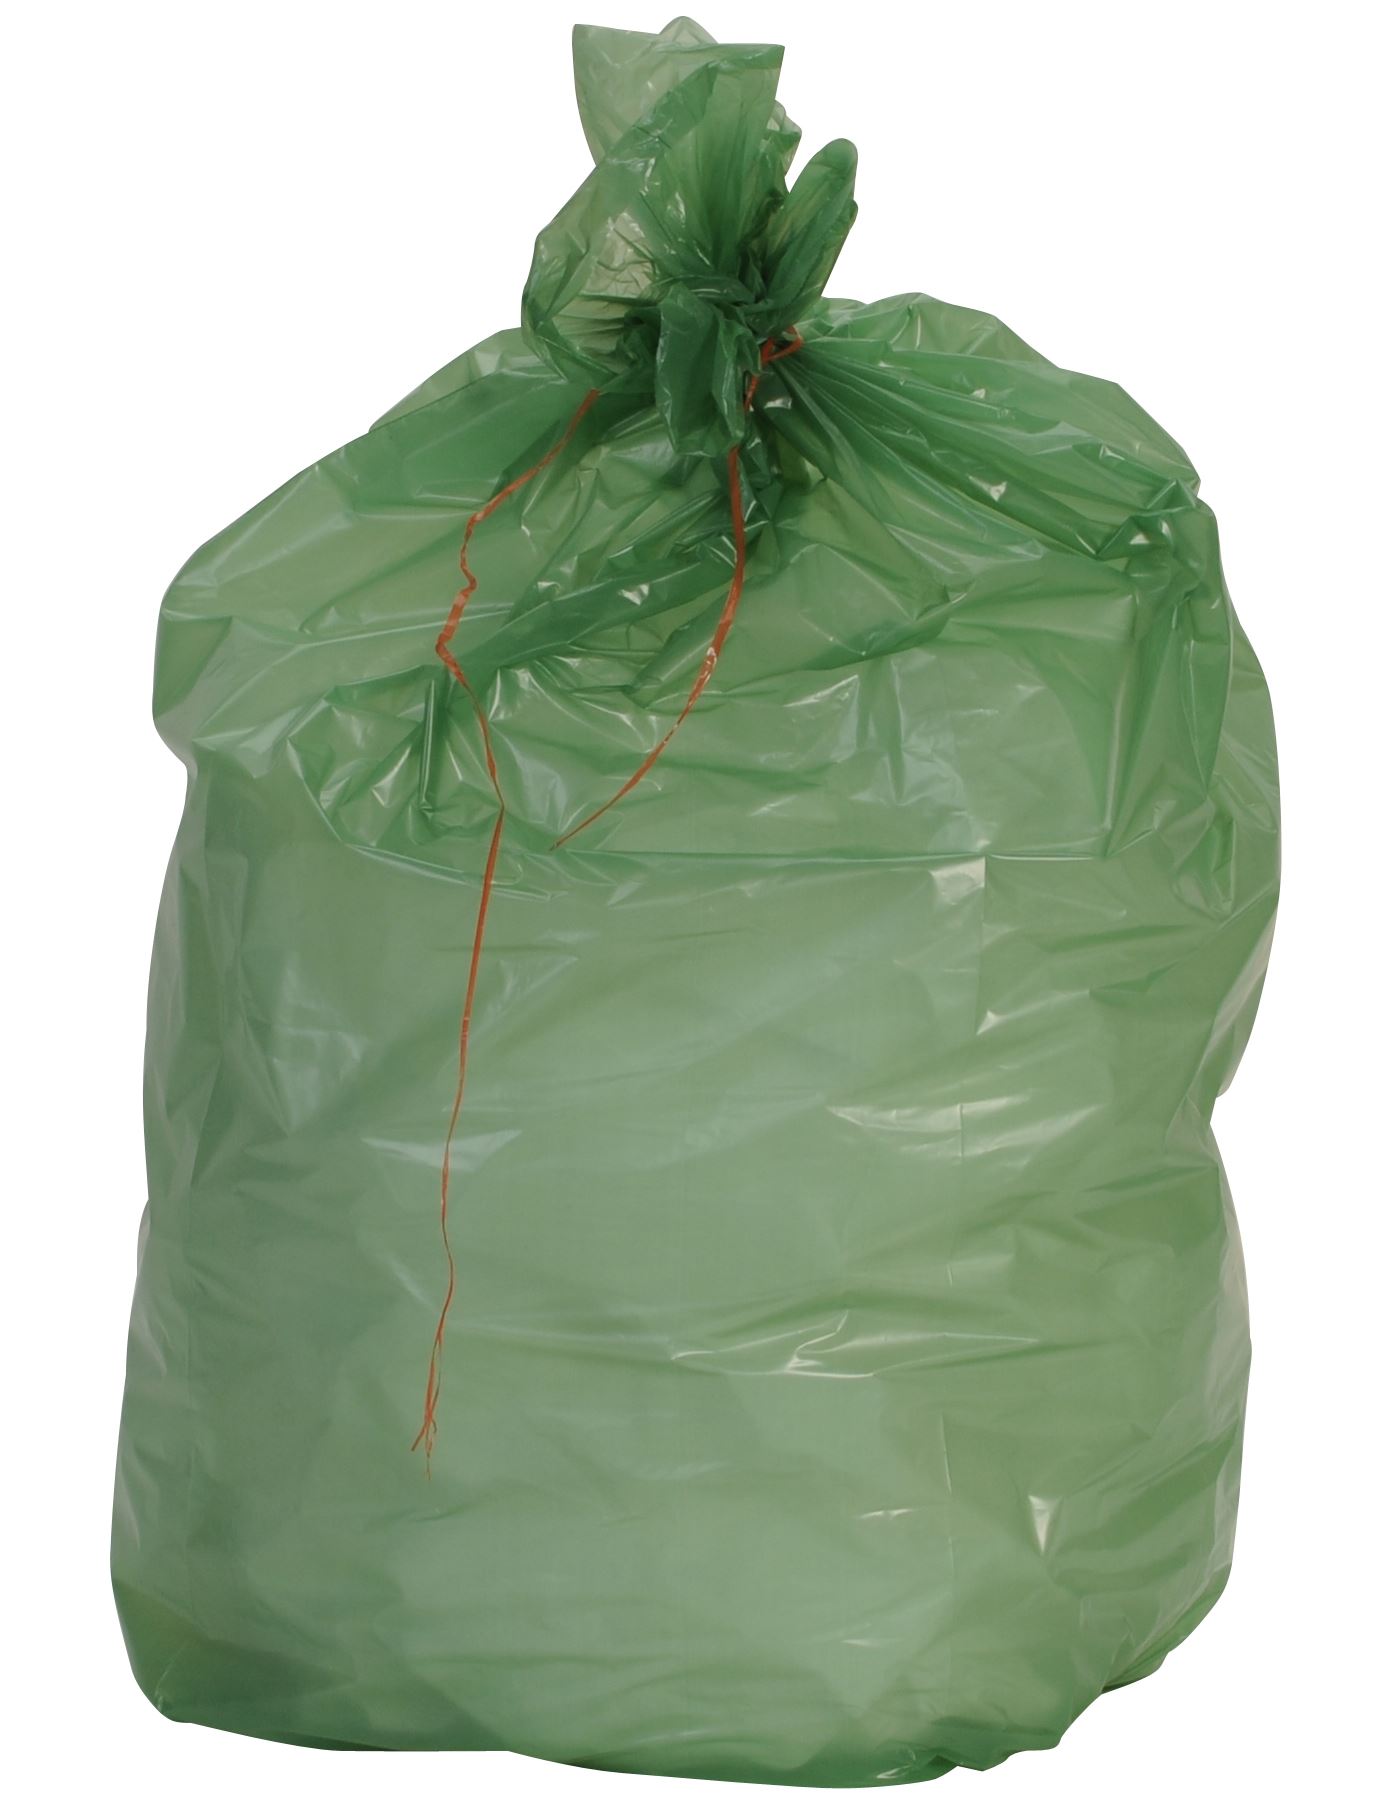 Sac poubelle 110 litres Tri sélectif vert - 200 sacs sur